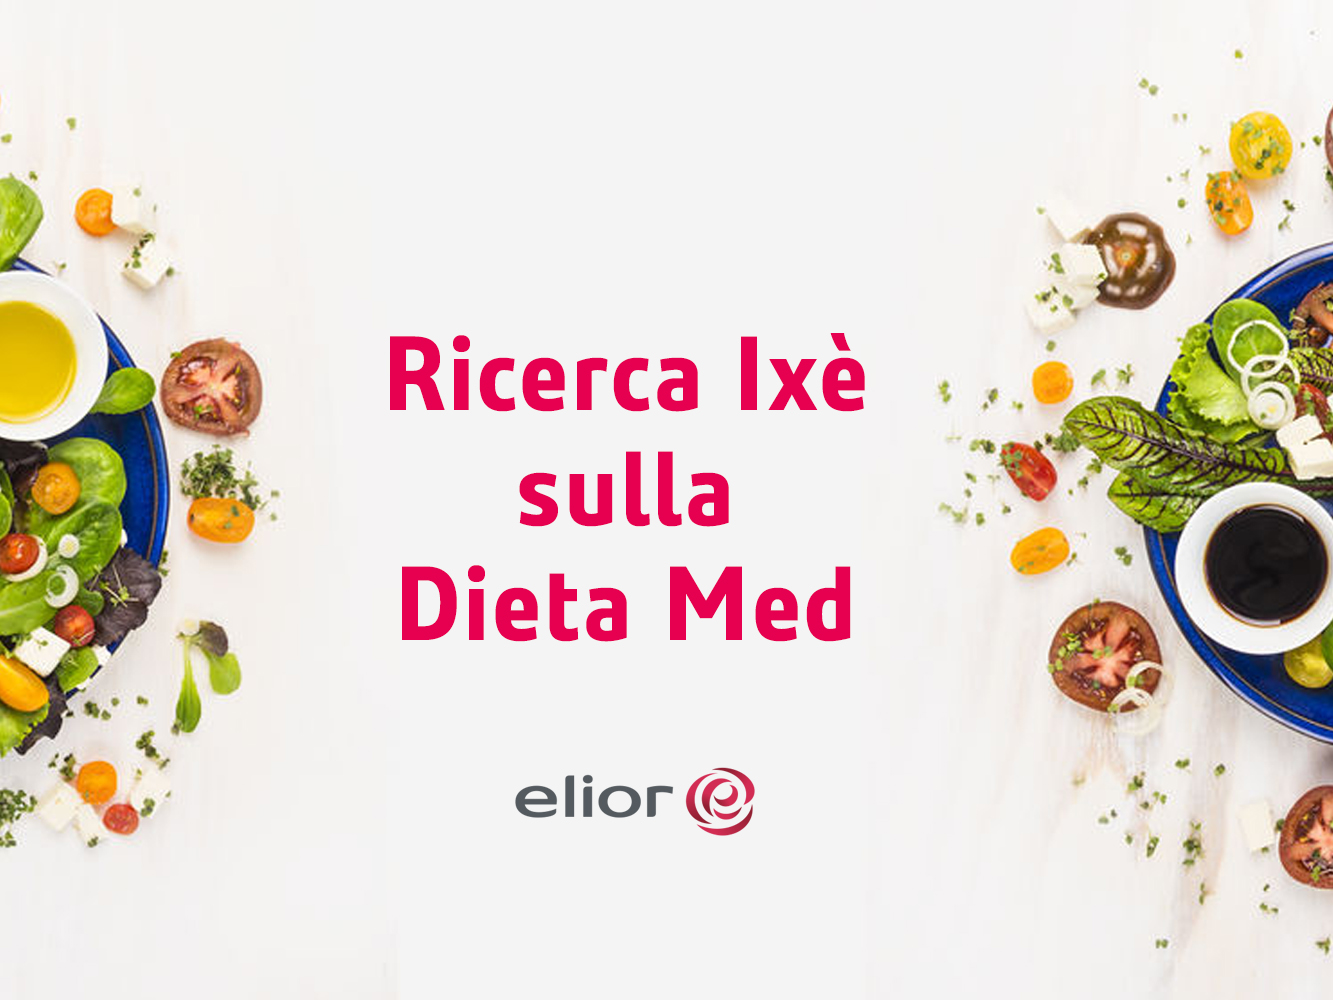 La dieta mediterranea: alimentazione e salute al primo posto secondo la ricerca Ixè